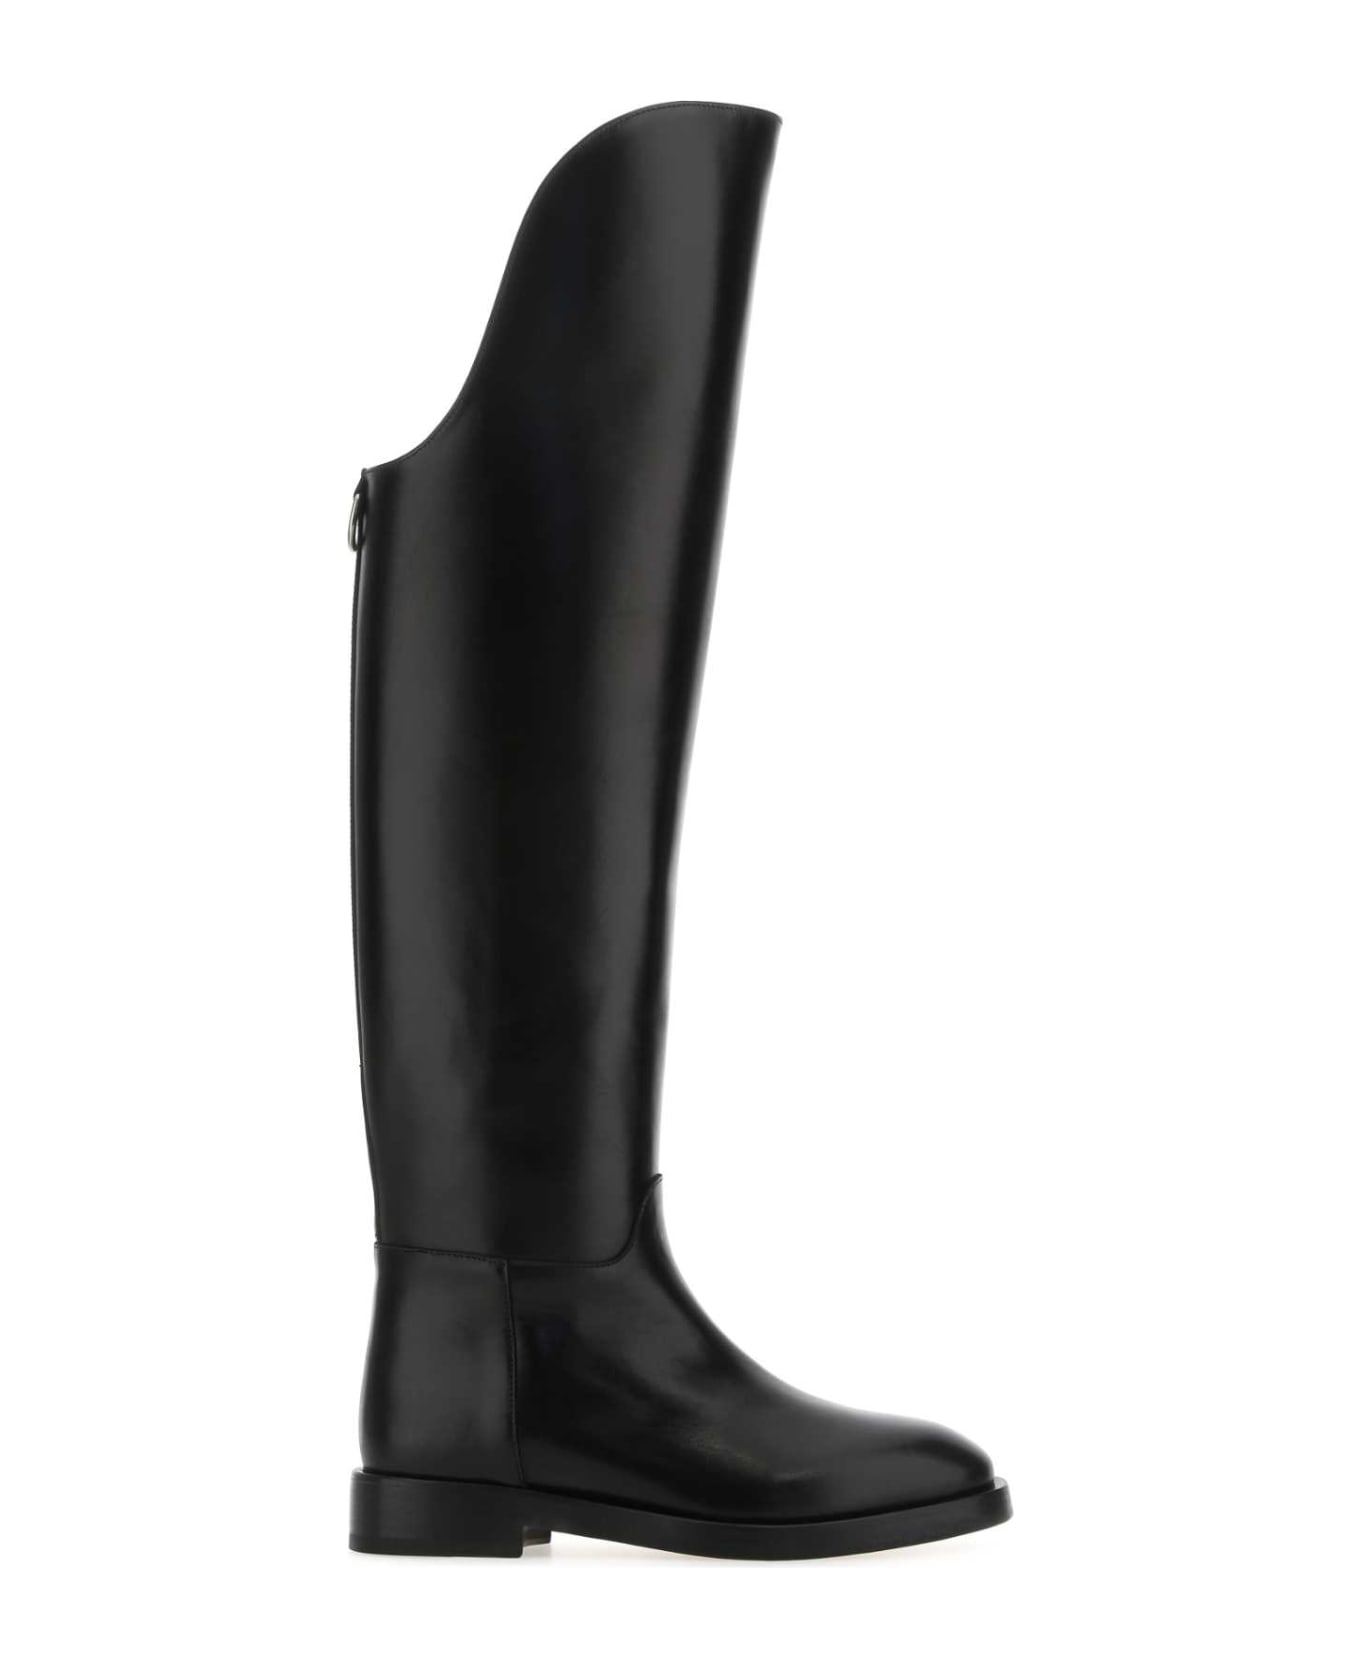 Durazzi Milano Black Leather Equestrian Boots - BLACK